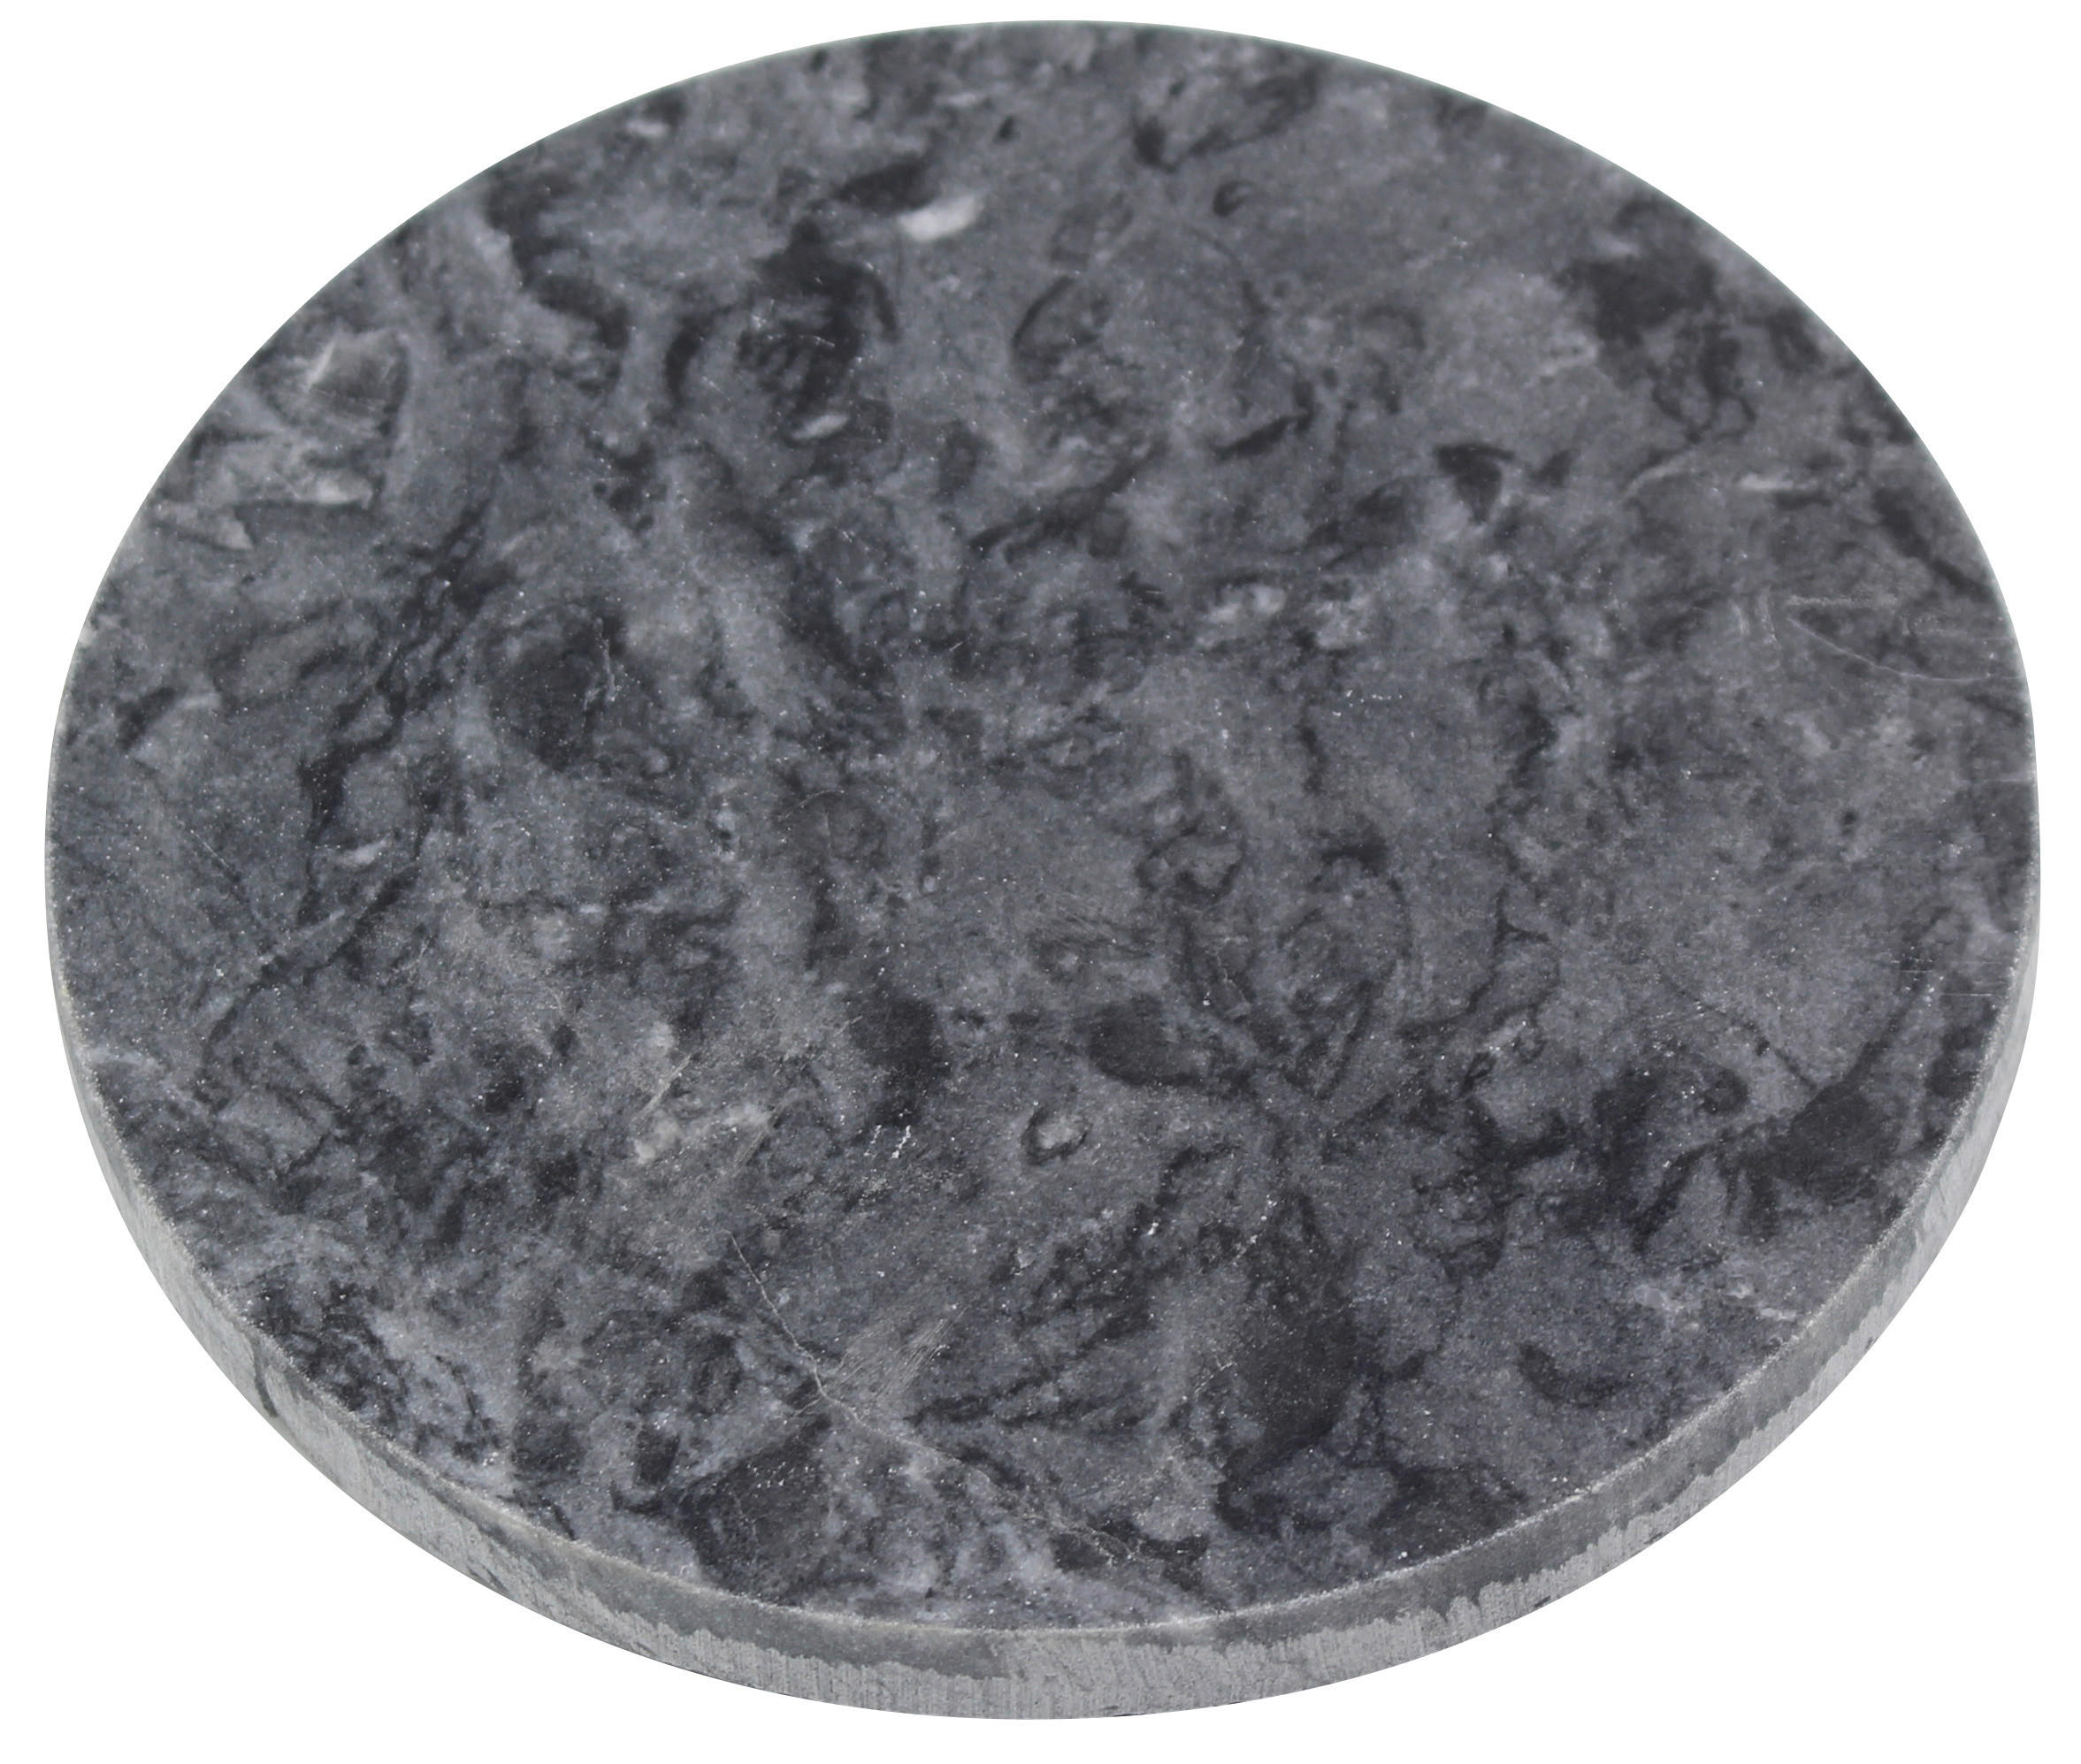 UNDERTALLRIK  15 cm  - svart, Trend, sten (15cm) - Ambia Home